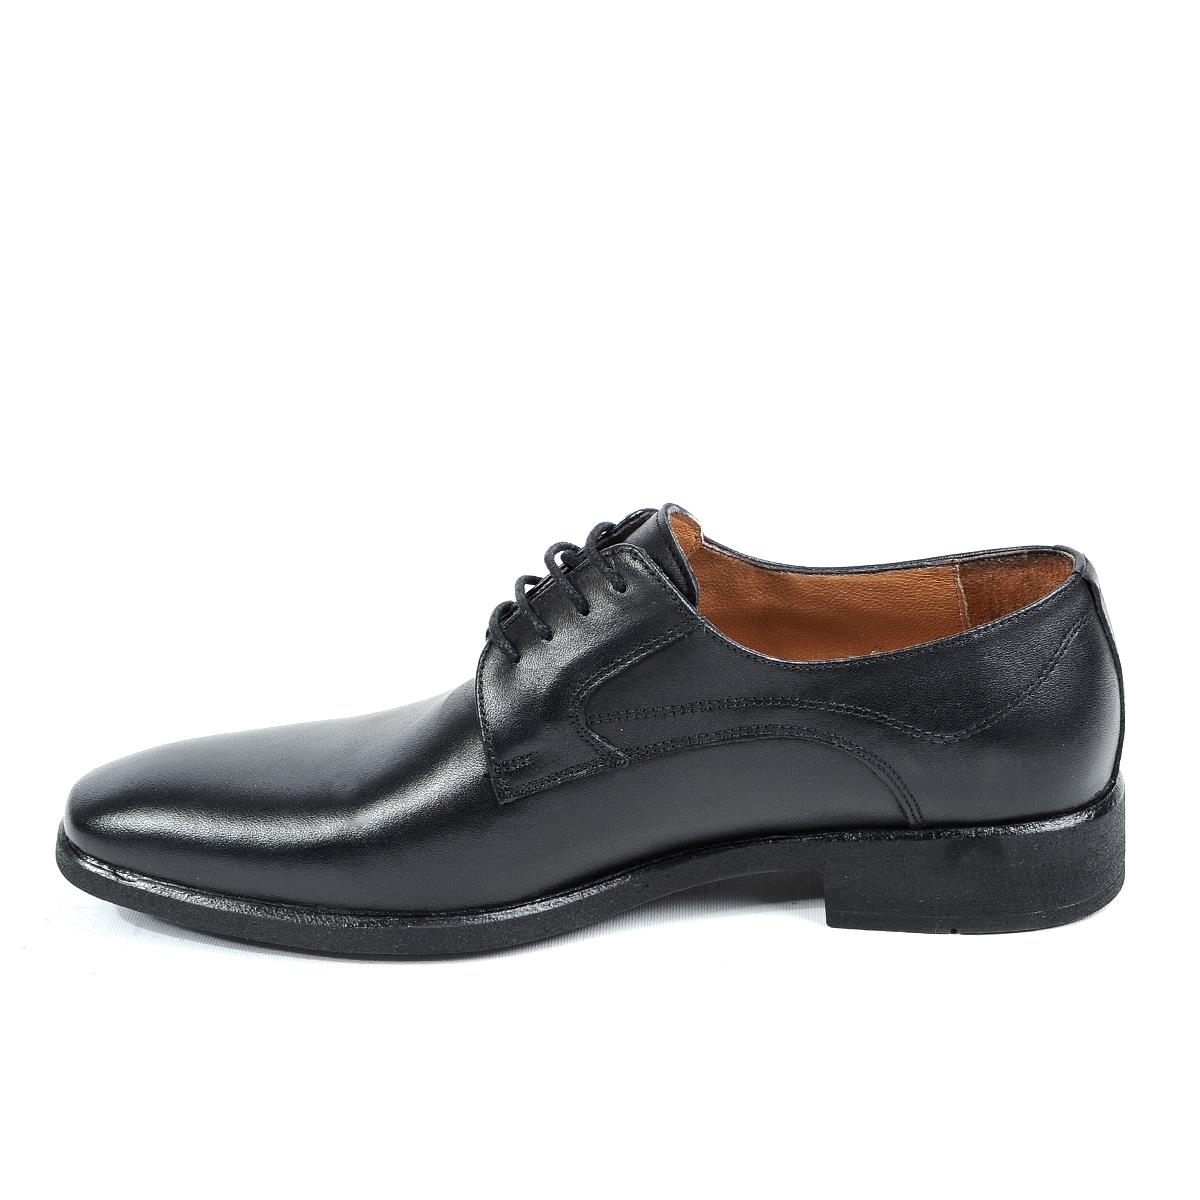 Flo 1905 Siyah Kauçuk %100 Deri Erkek Klasik Ayakkabı. 5